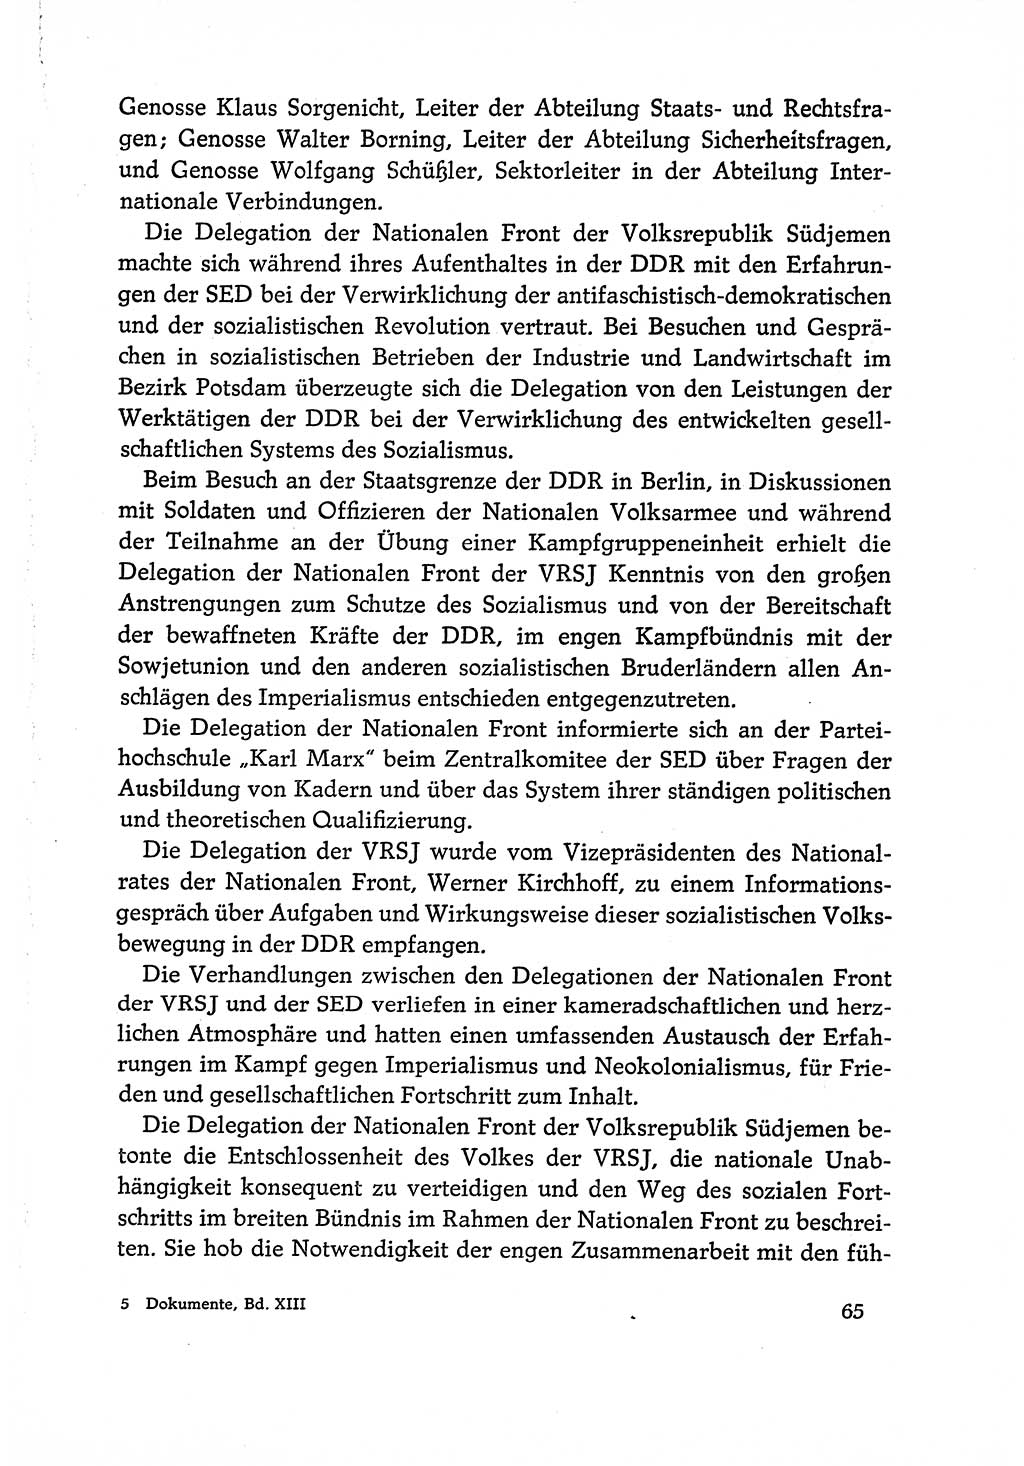 Dokumente der Sozialistischen Einheitspartei Deutschlands (SED) [Deutsche Demokratische Republik (DDR)] 1970-1971, Seite 65 (Dok. SED DDR 1970-1971, S. 65)